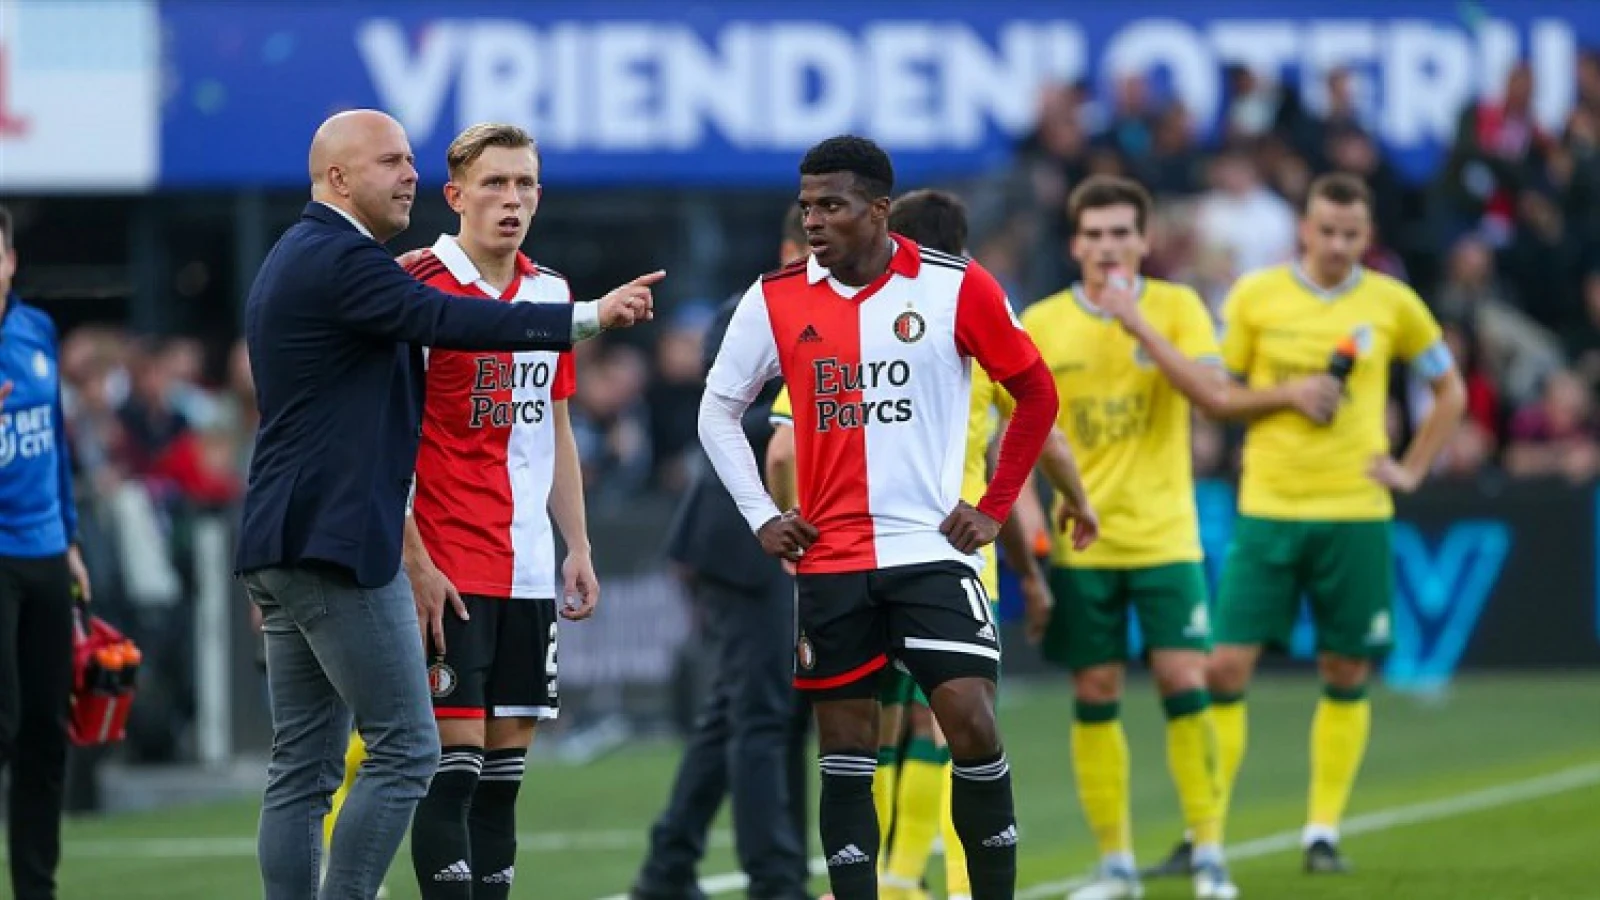 Dilrosun: 'De trainer zei gewoon dat dit Feyenoord onwaardig was de eerste helft'